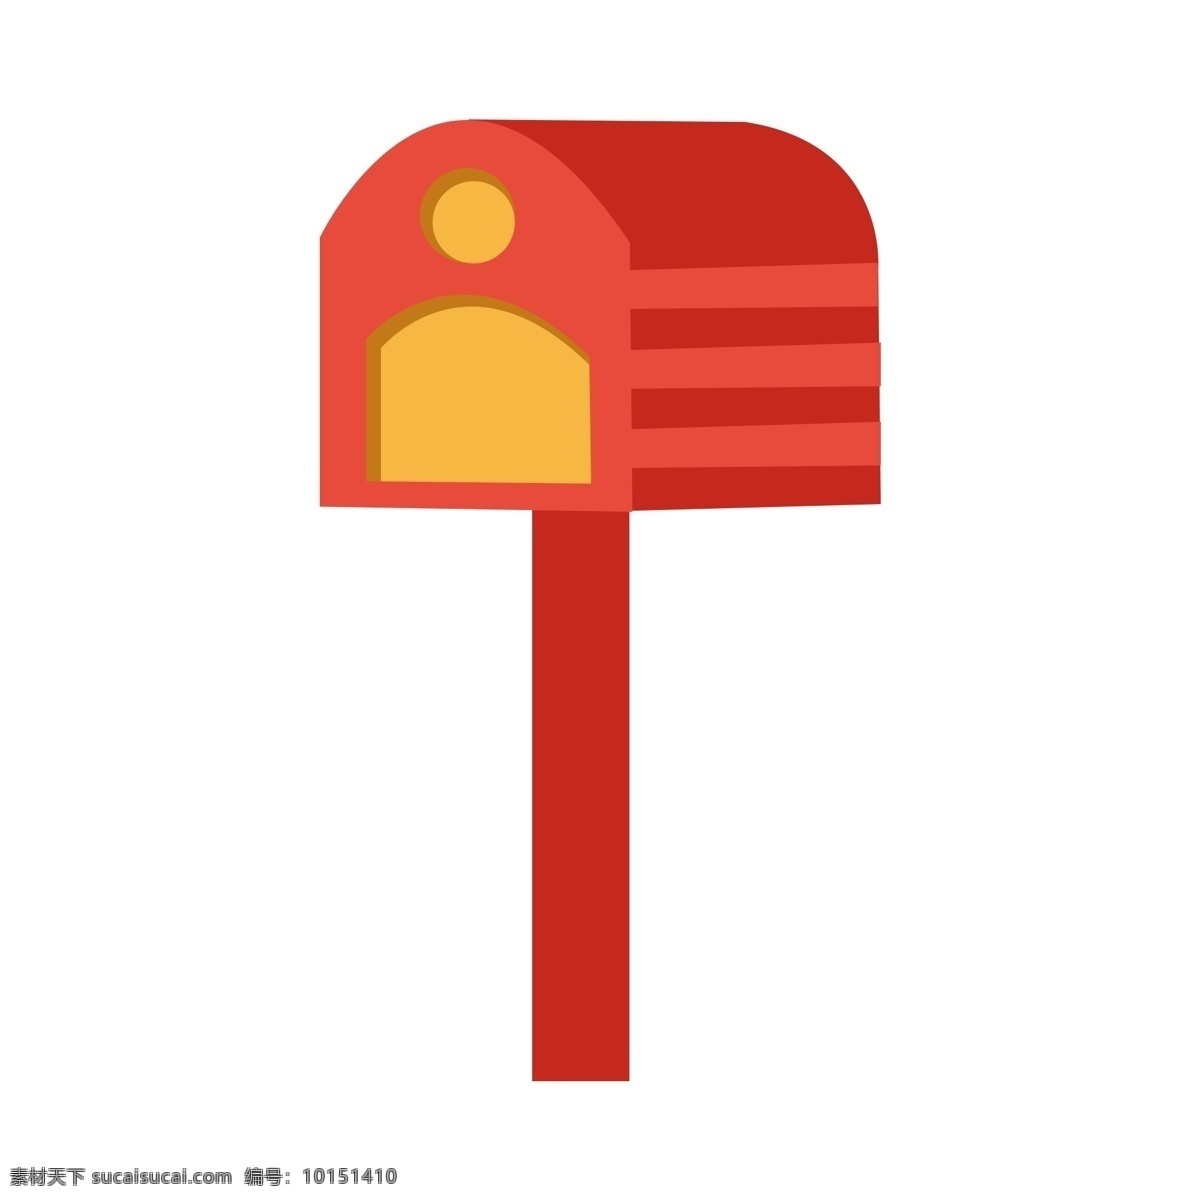 超级 可爱 红色 邮箱 矢量 超级可爱 红色邮箱克 黄色提示口 儿童插画 童趣 邮寄 幼儿园贴纸 小朋友